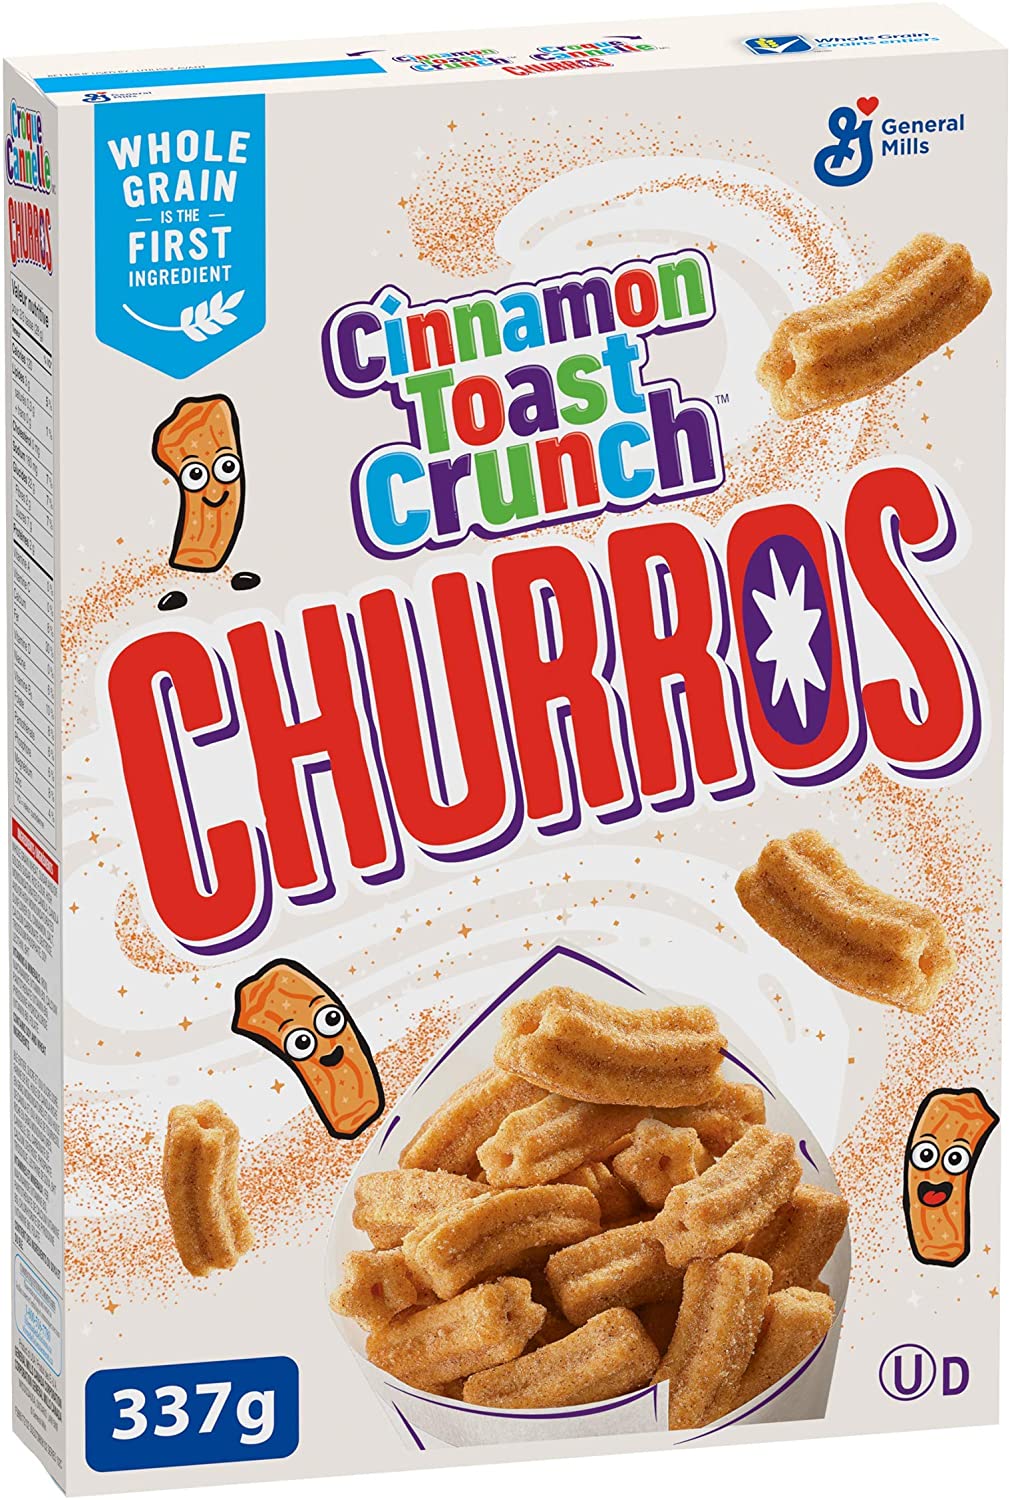 cinnamon toast crunch churros